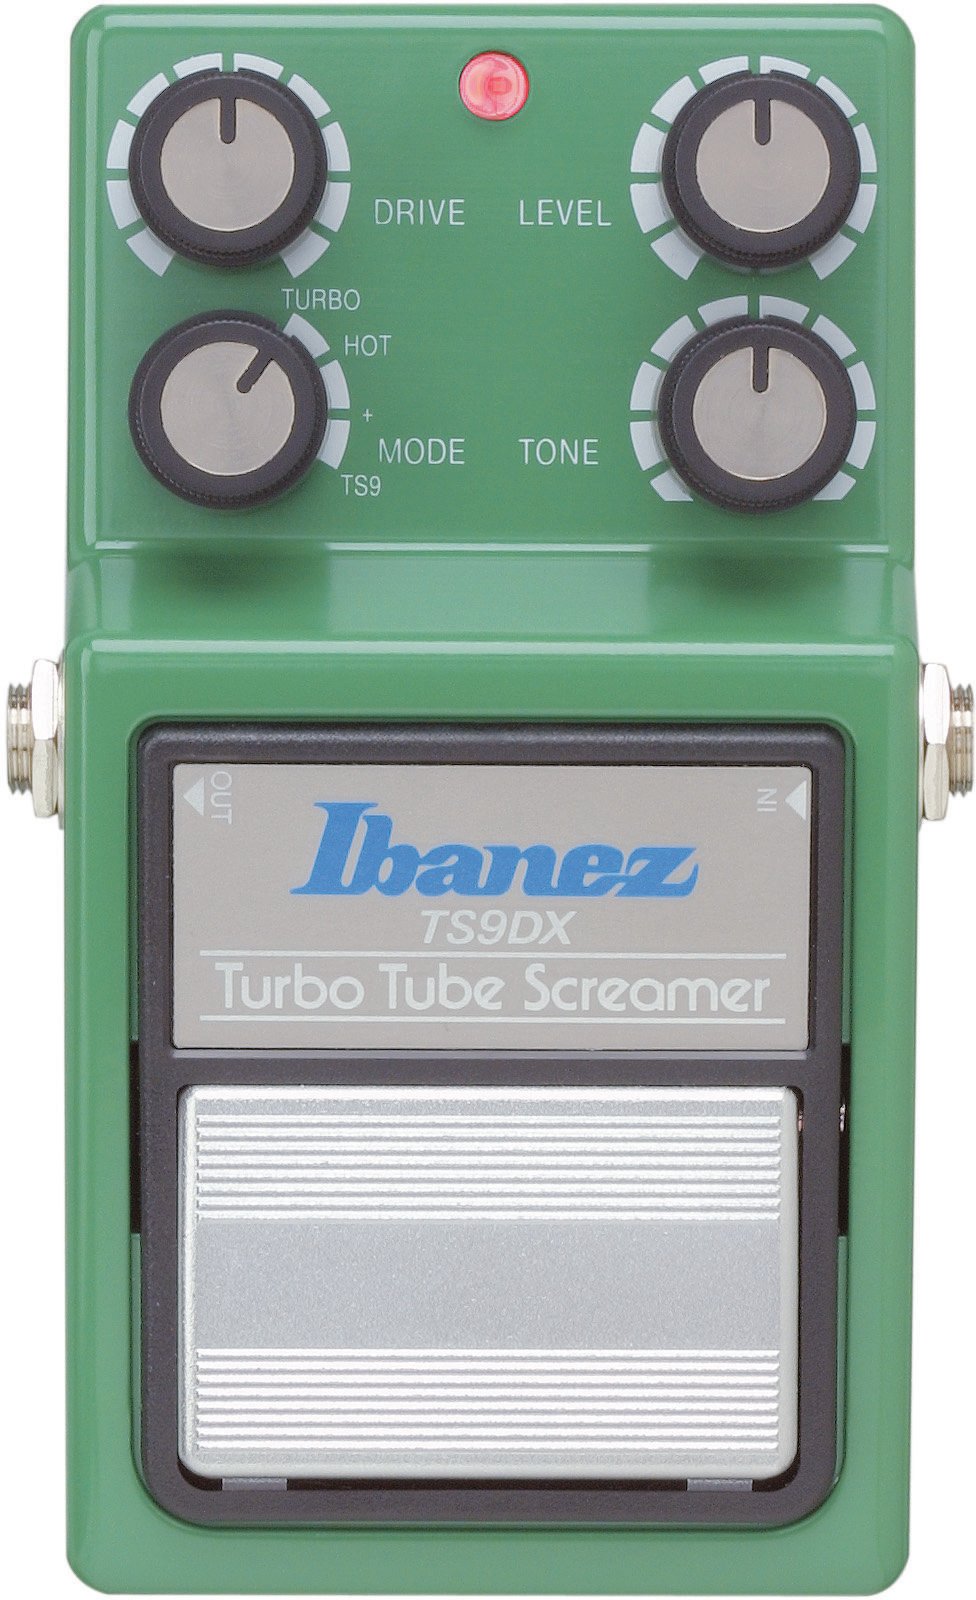 Ibanez TS9DX Turbo Ibanez